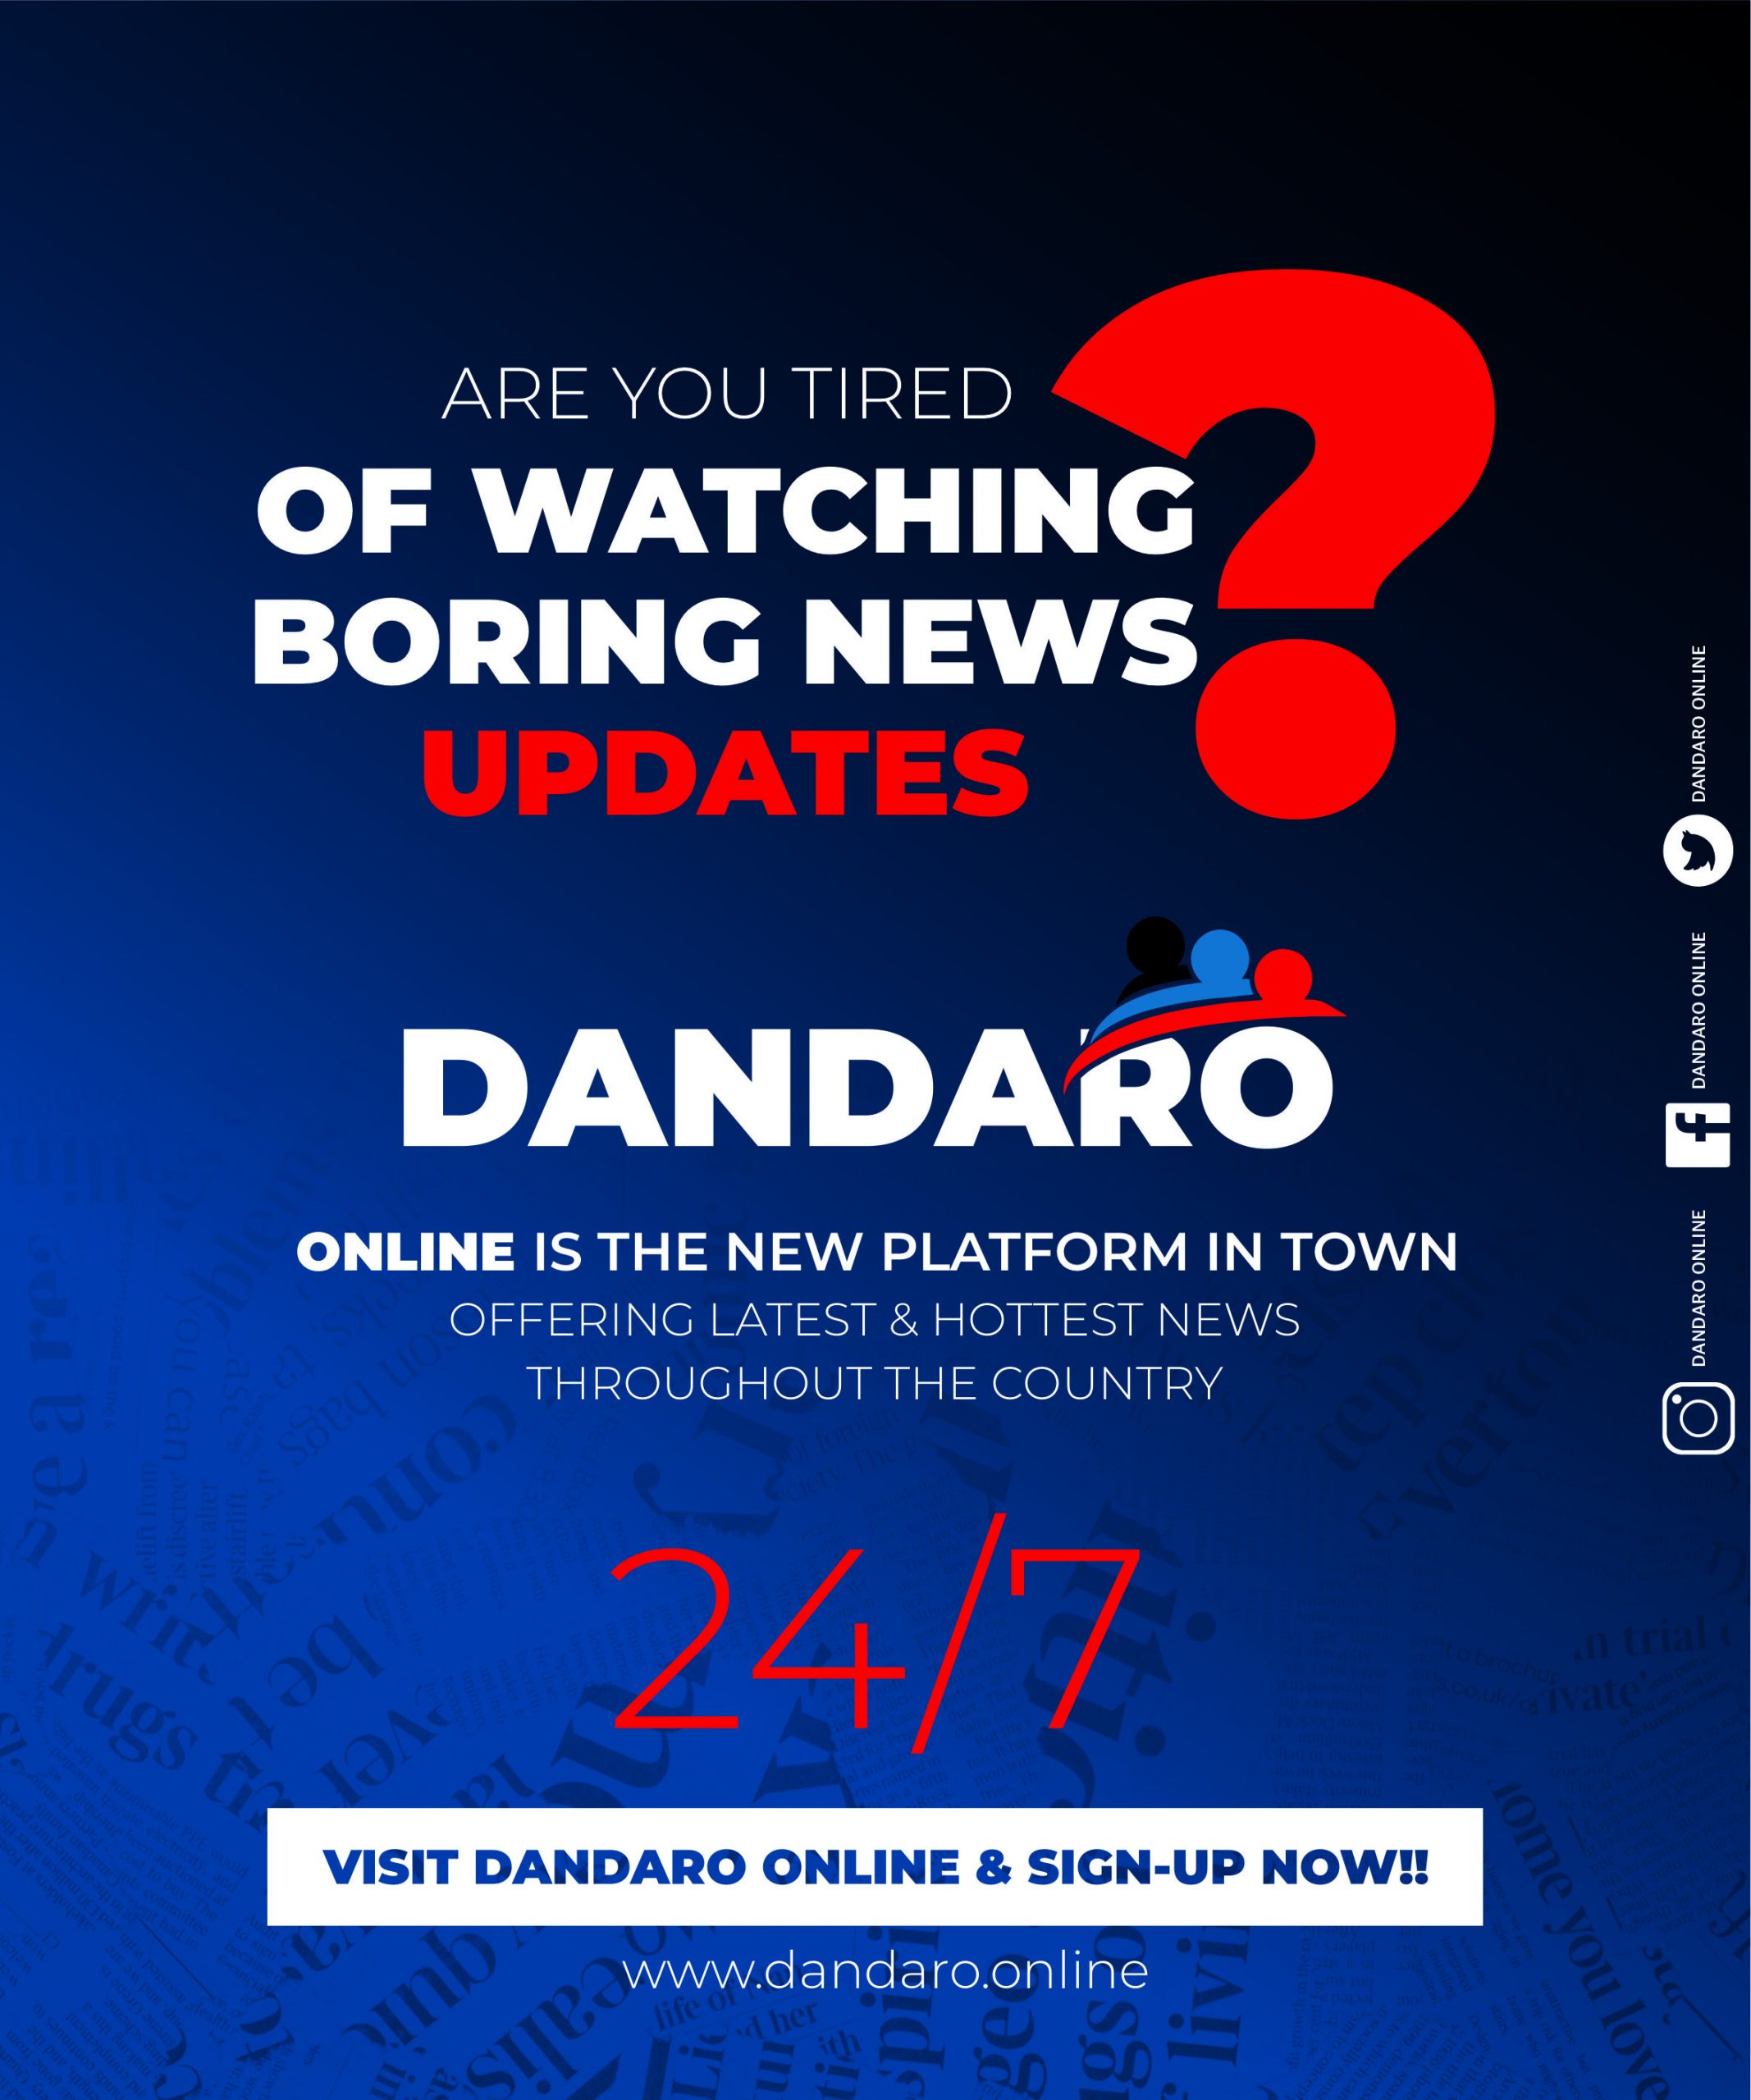 Dandaro Online